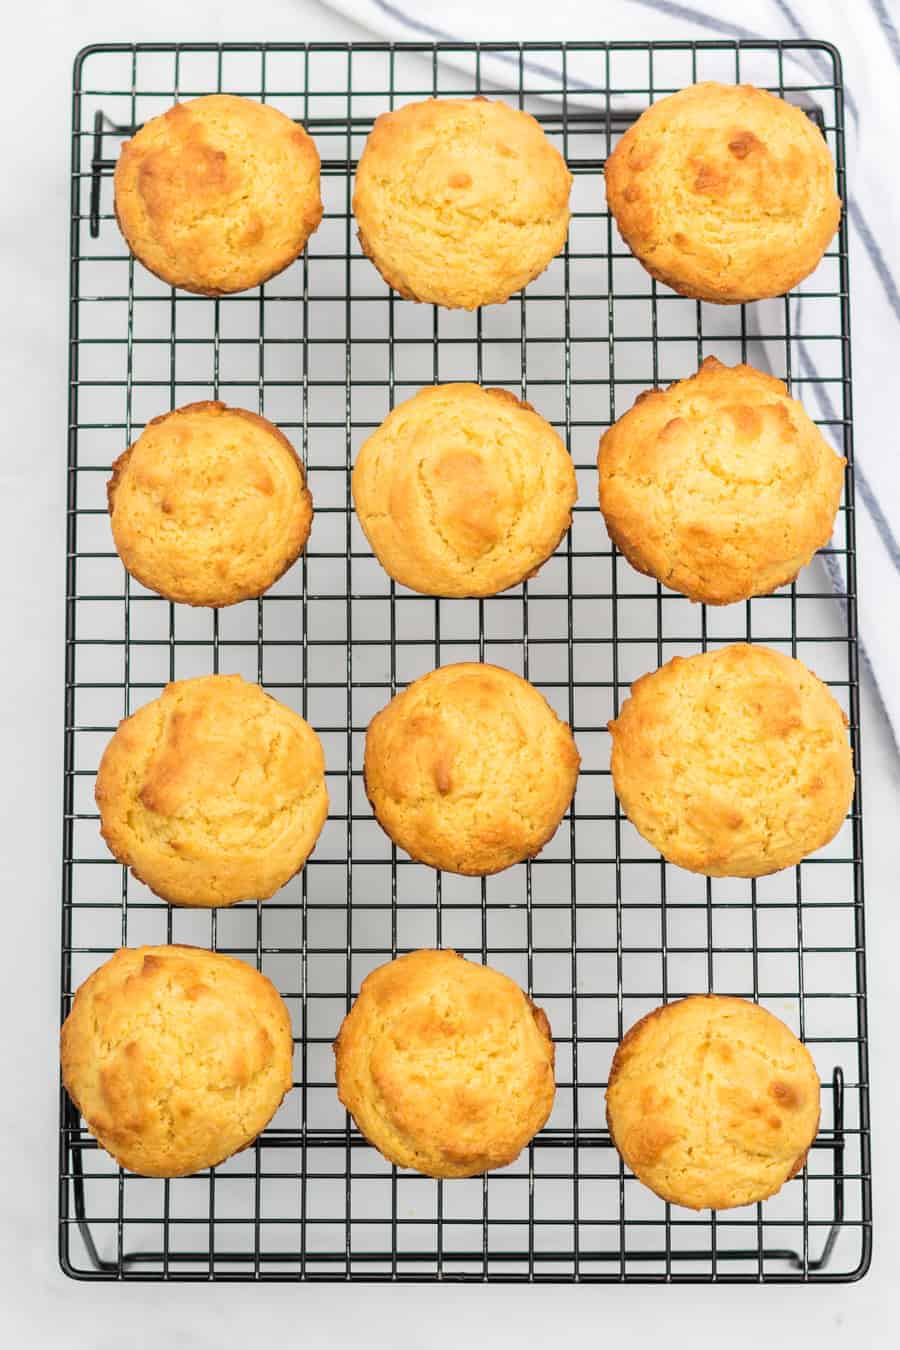 12 muffin di mais al forno e dorati poggiano su un rack di raffreddamento a filo.